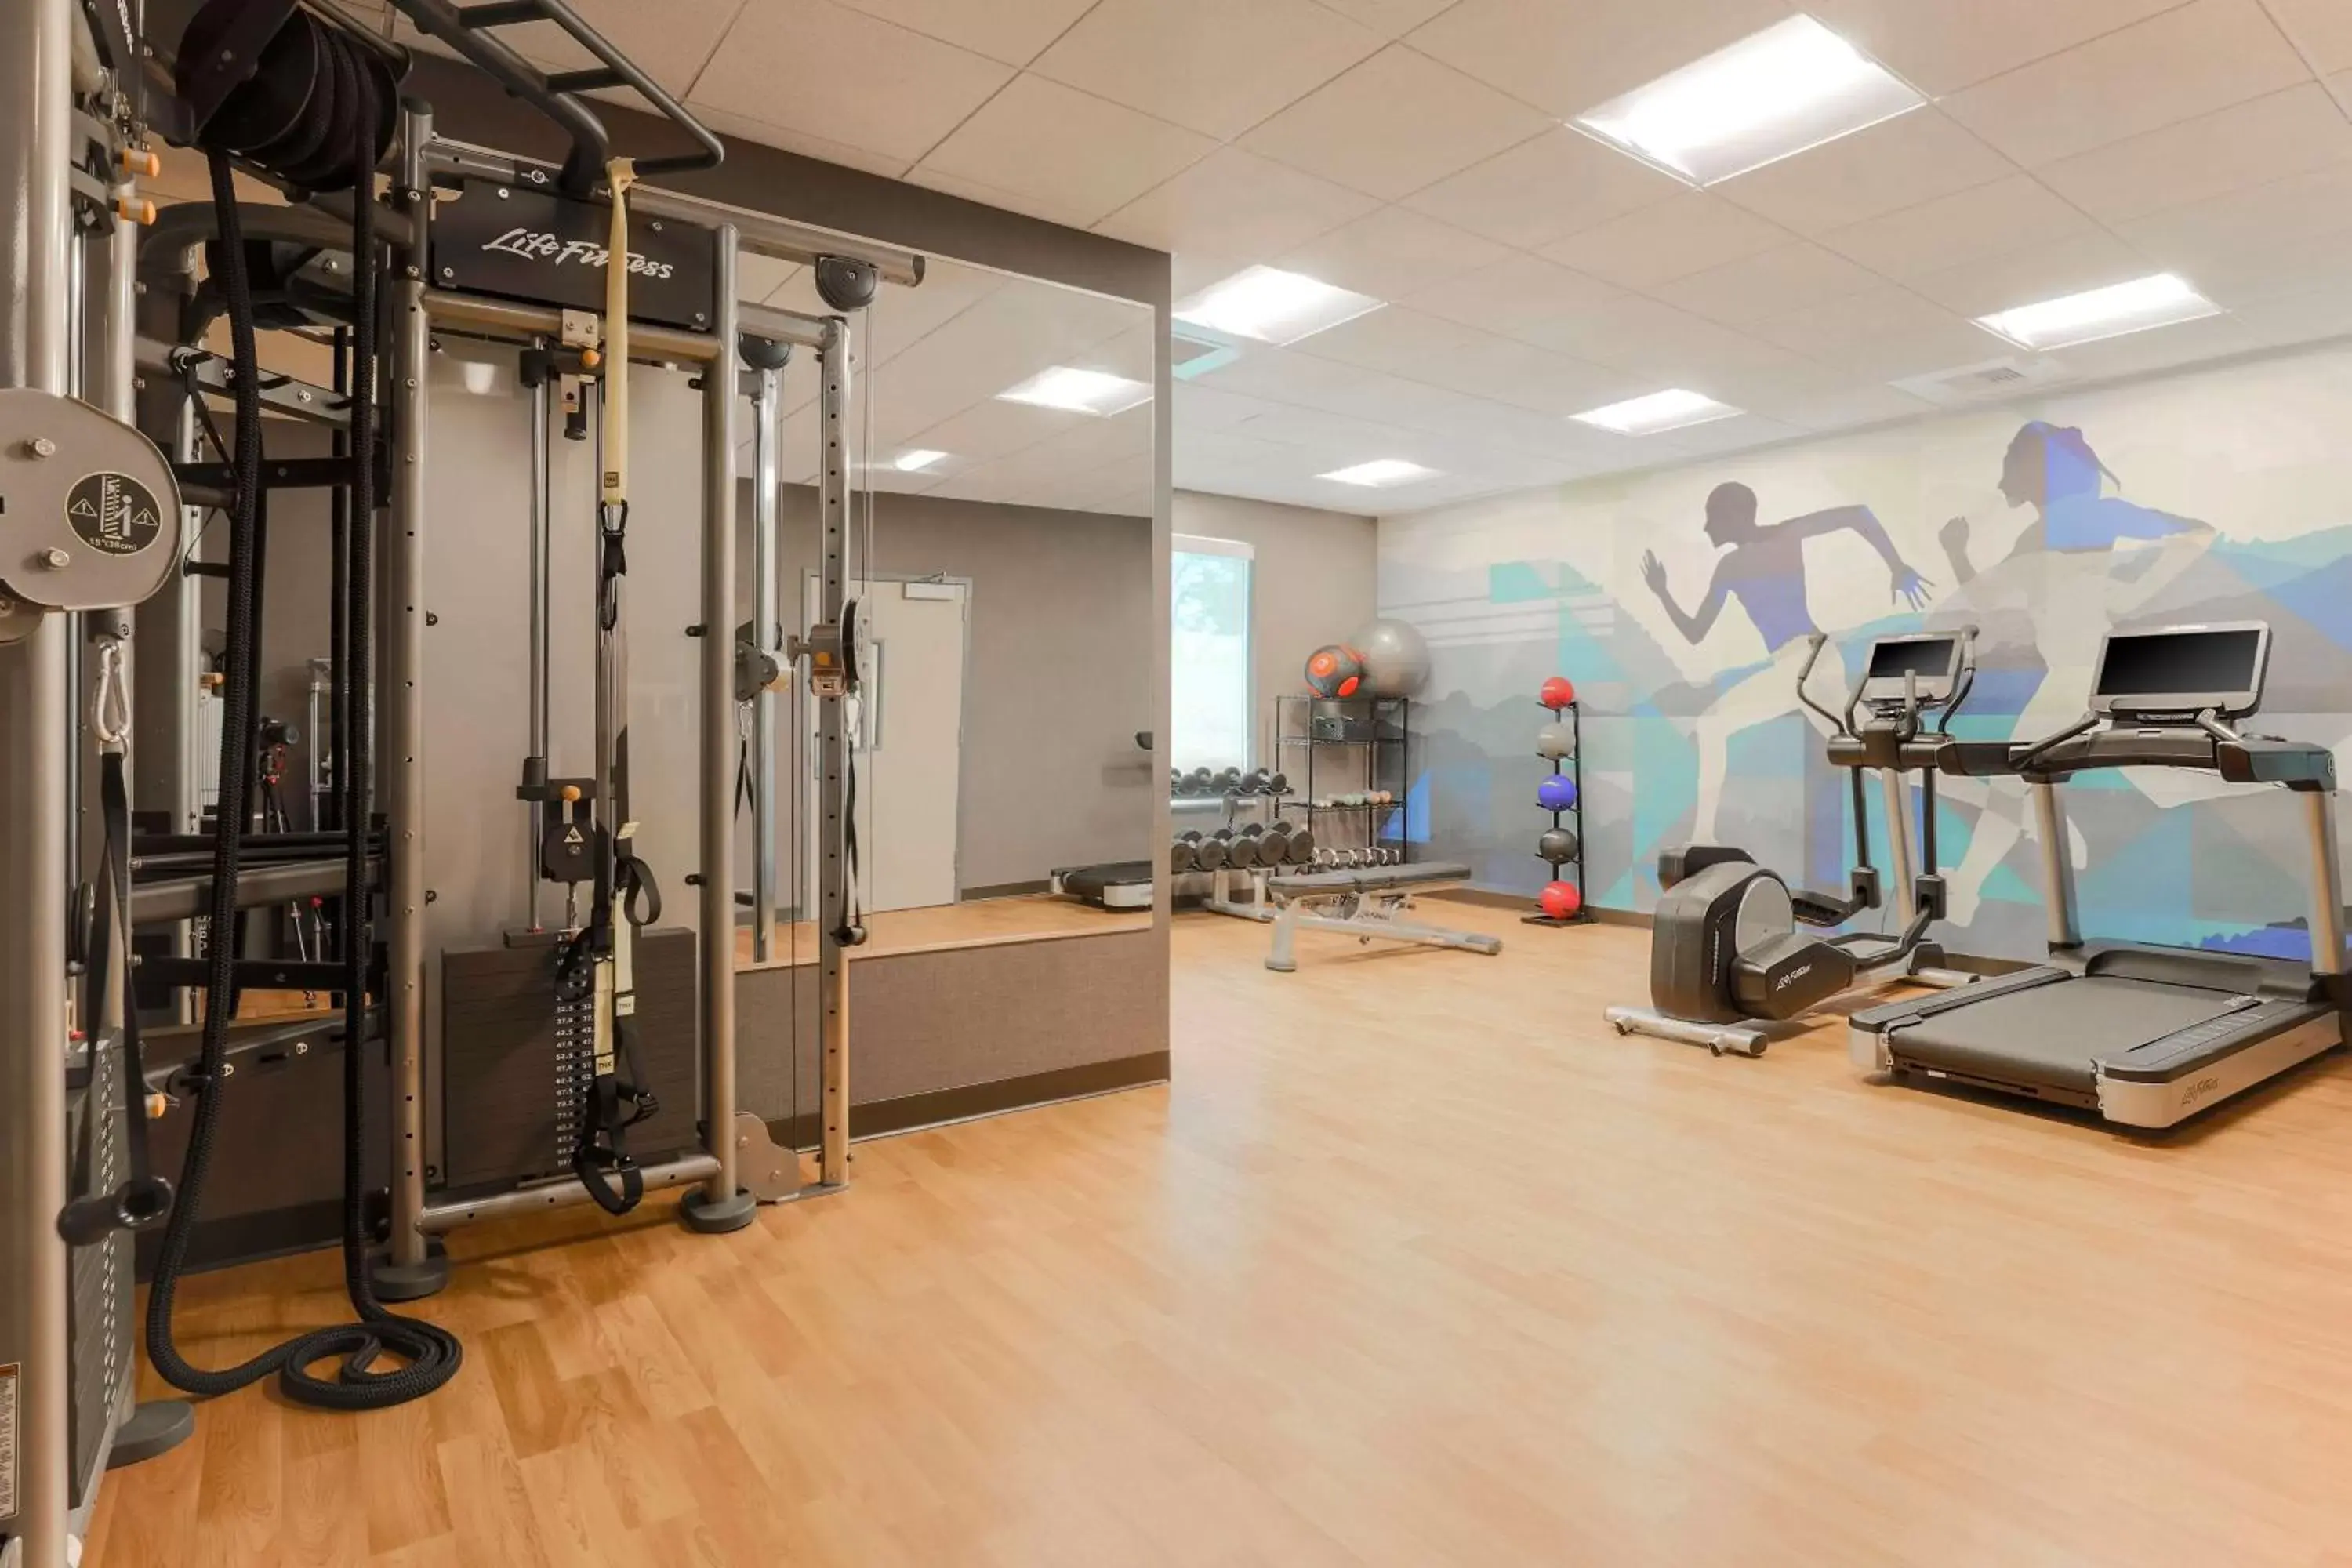 Fitness centre/facilities, Fitness Center/Facilities in Hyatt House Davis